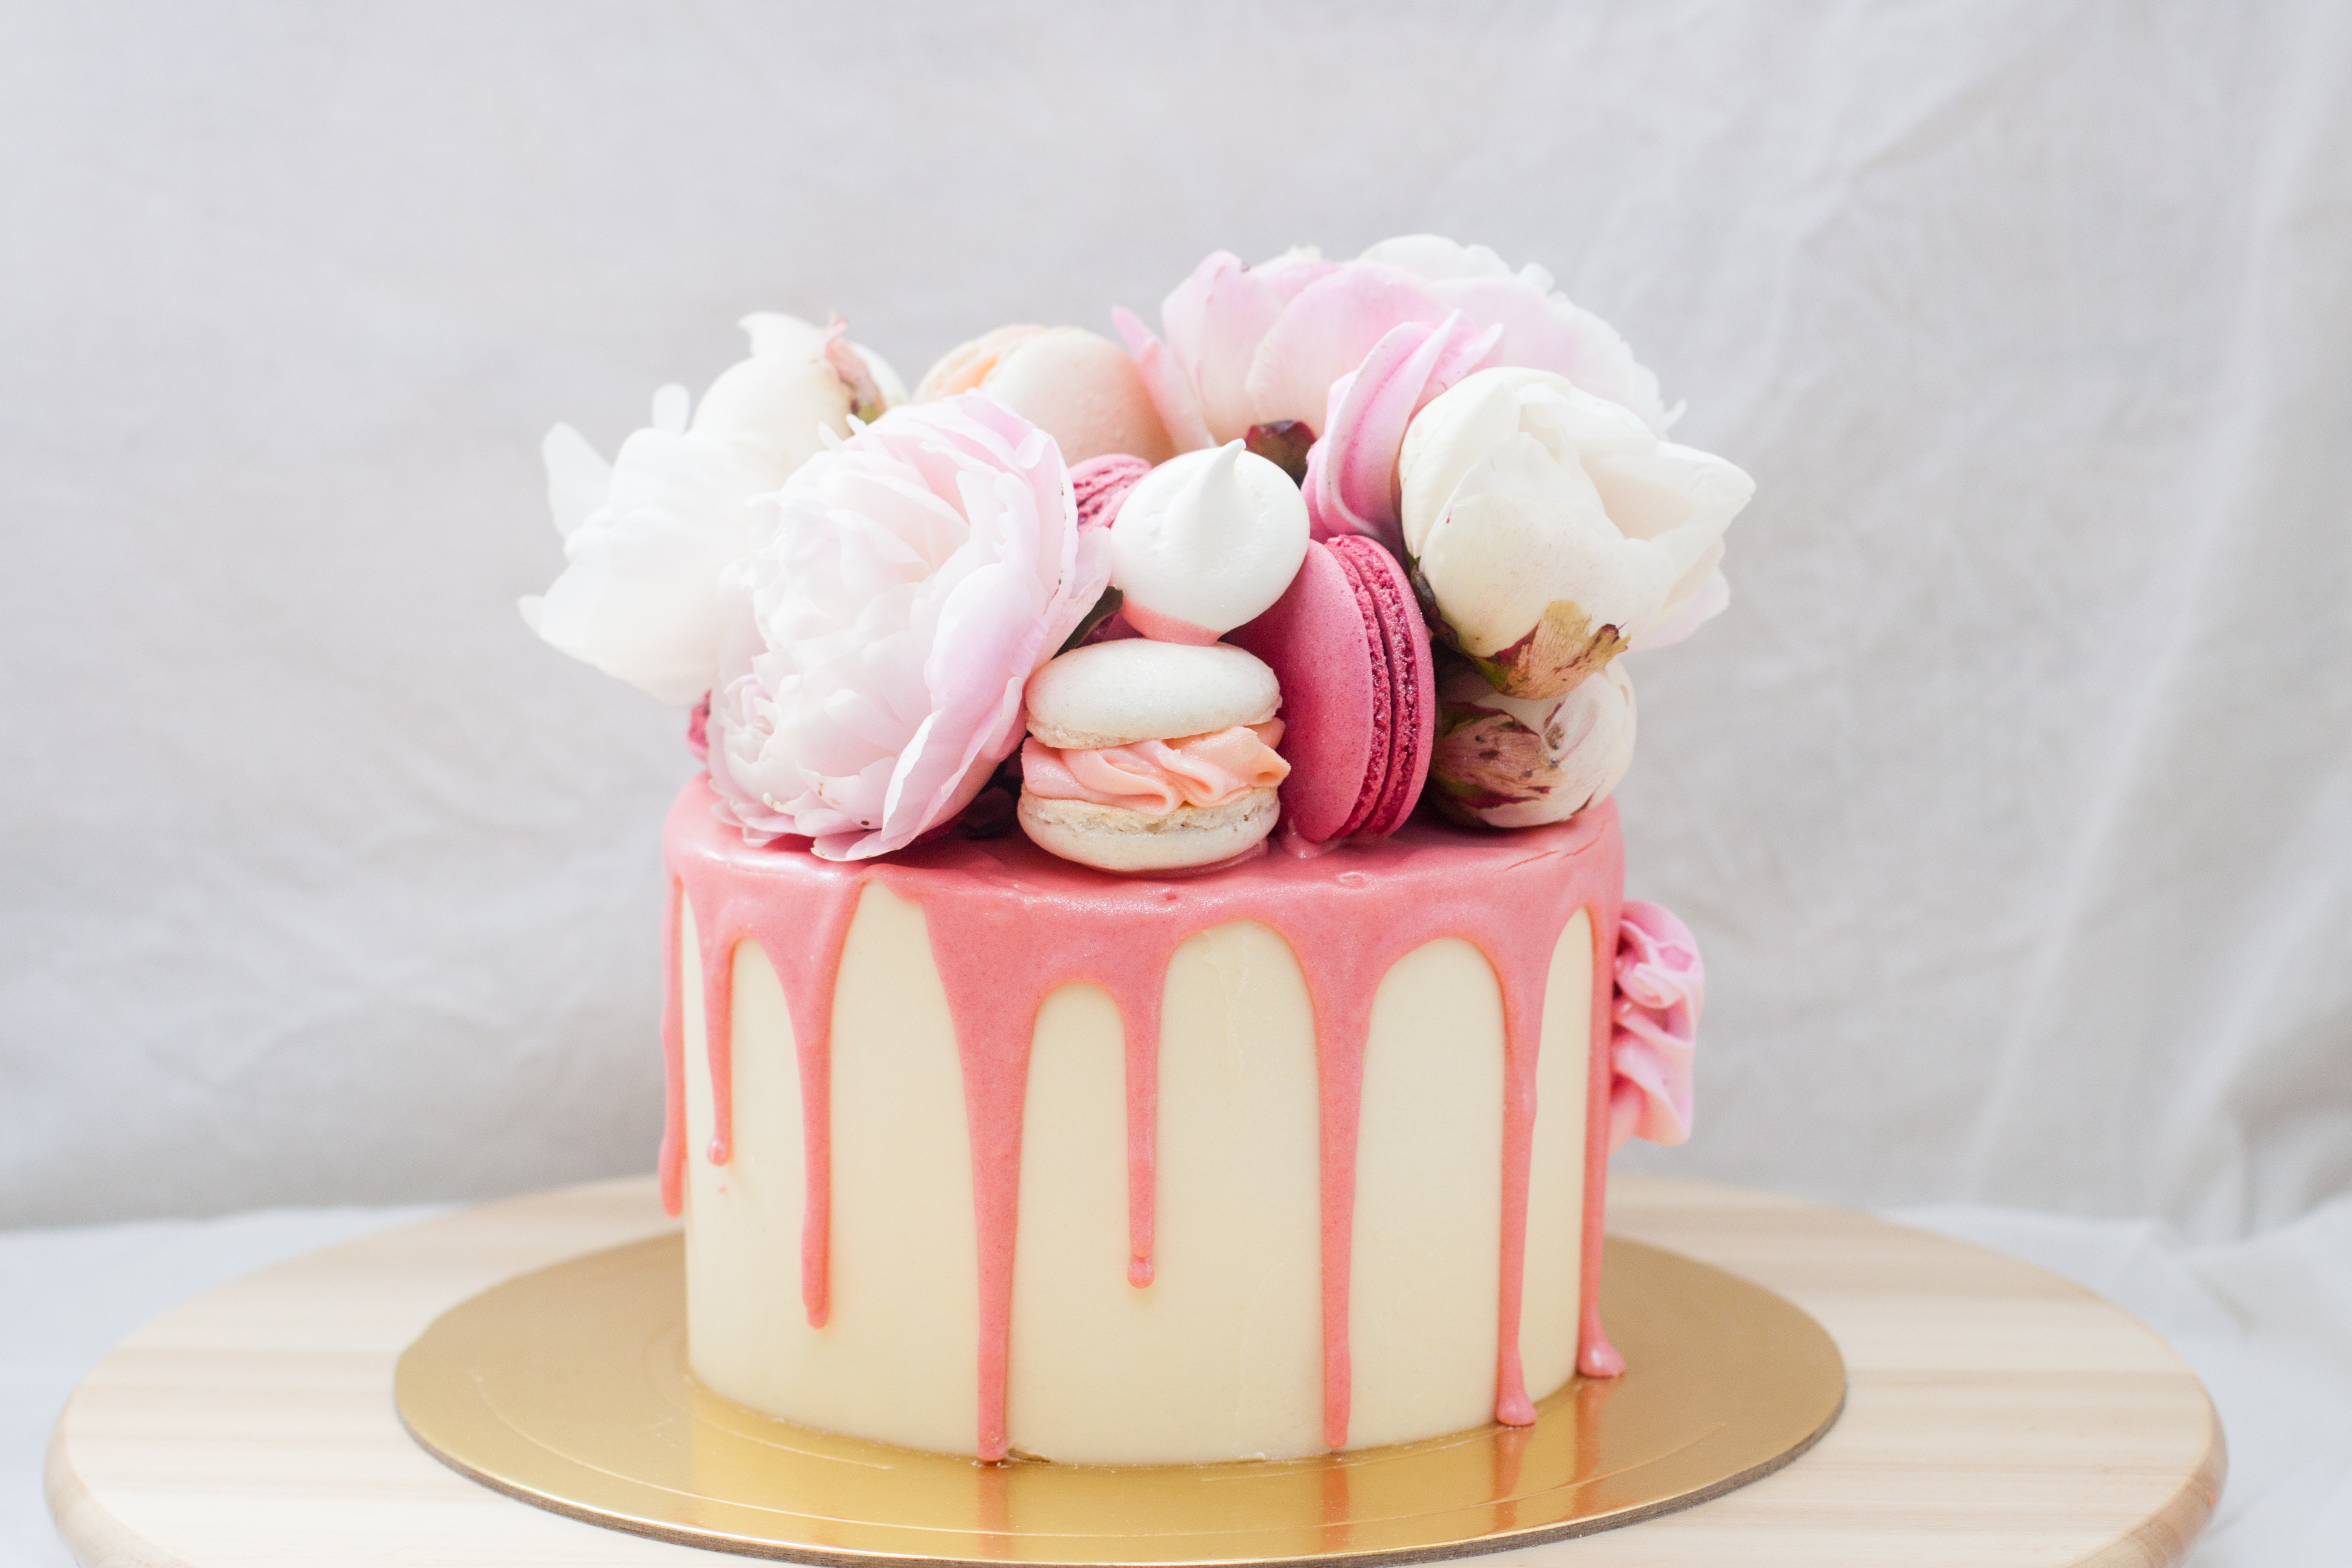 Petit gâteau d'anniversaire avec du chocolat rose fondu, des pivoines fraîches, des macarons et des meringues sur fond blanc | Source : Getty Images